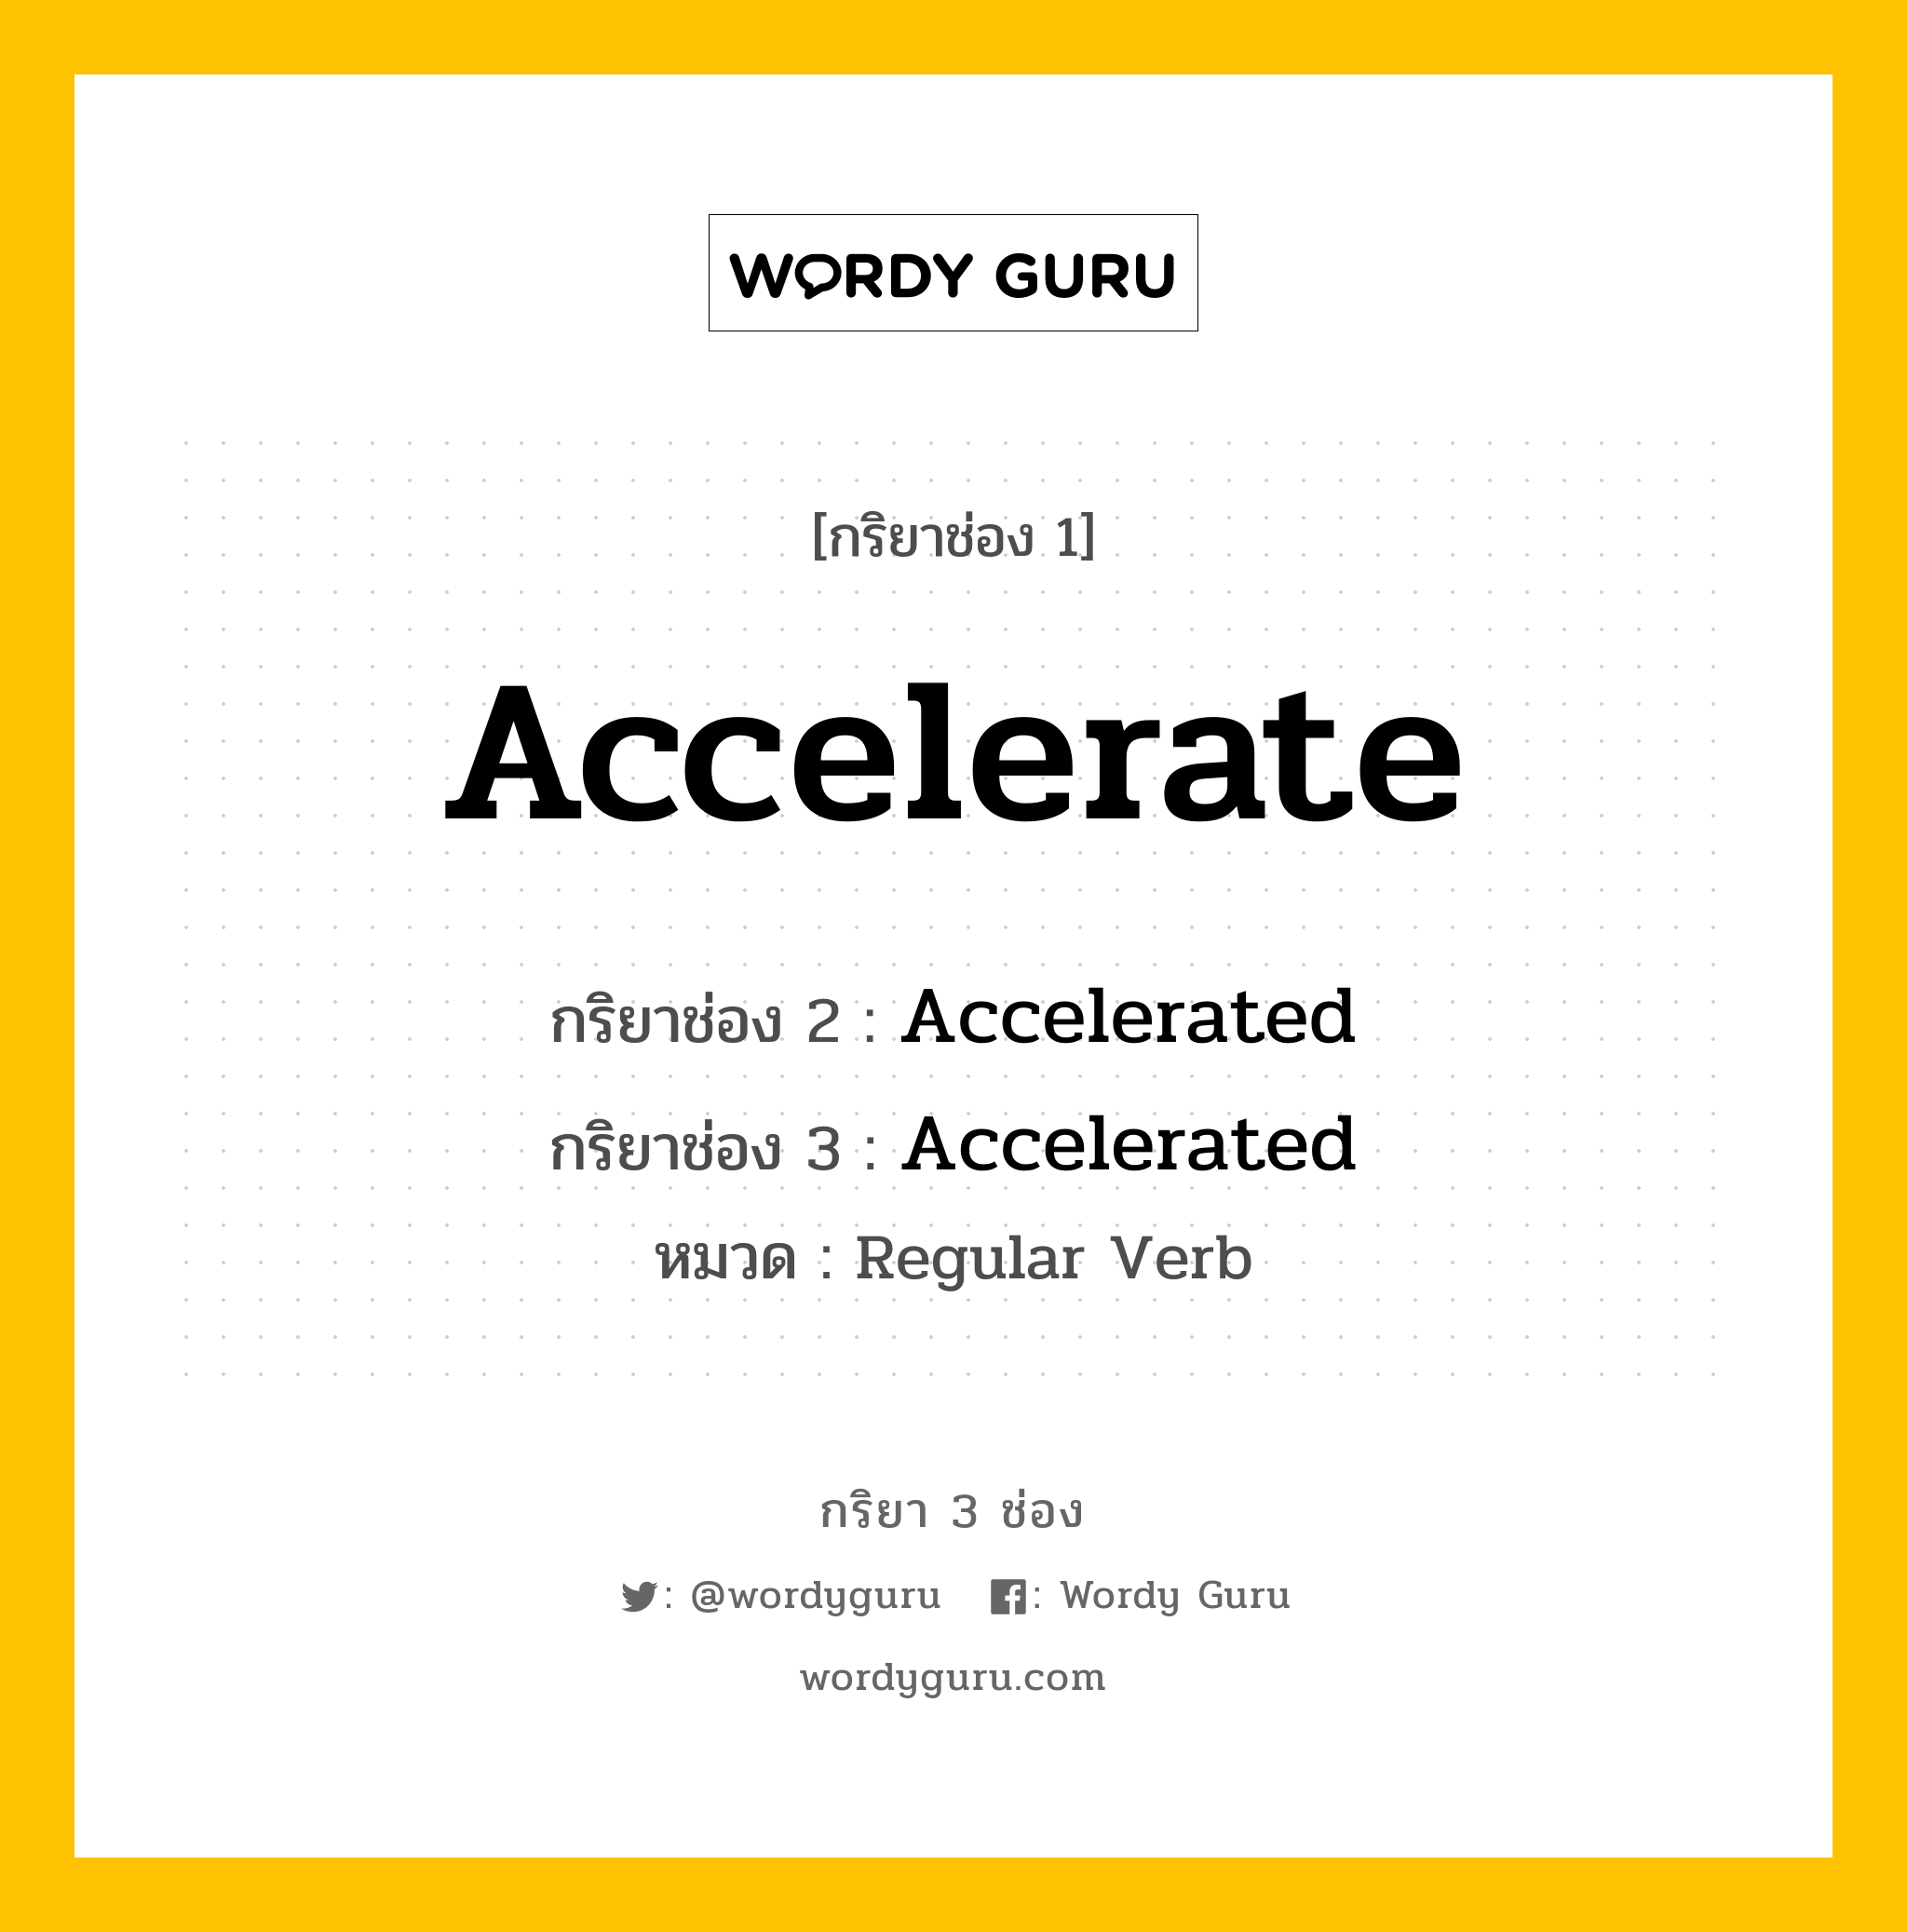 Accelerate มีกริยา 3 ช่องอะไรบ้าง? คำศัพท์ในกลุ่มประเภท Regular Verb, กริยาช่อง 1 Accelerate กริยาช่อง 2 Accelerated กริยาช่อง 3 Accelerated หมวด Regular Verb หมวด Regular Verb